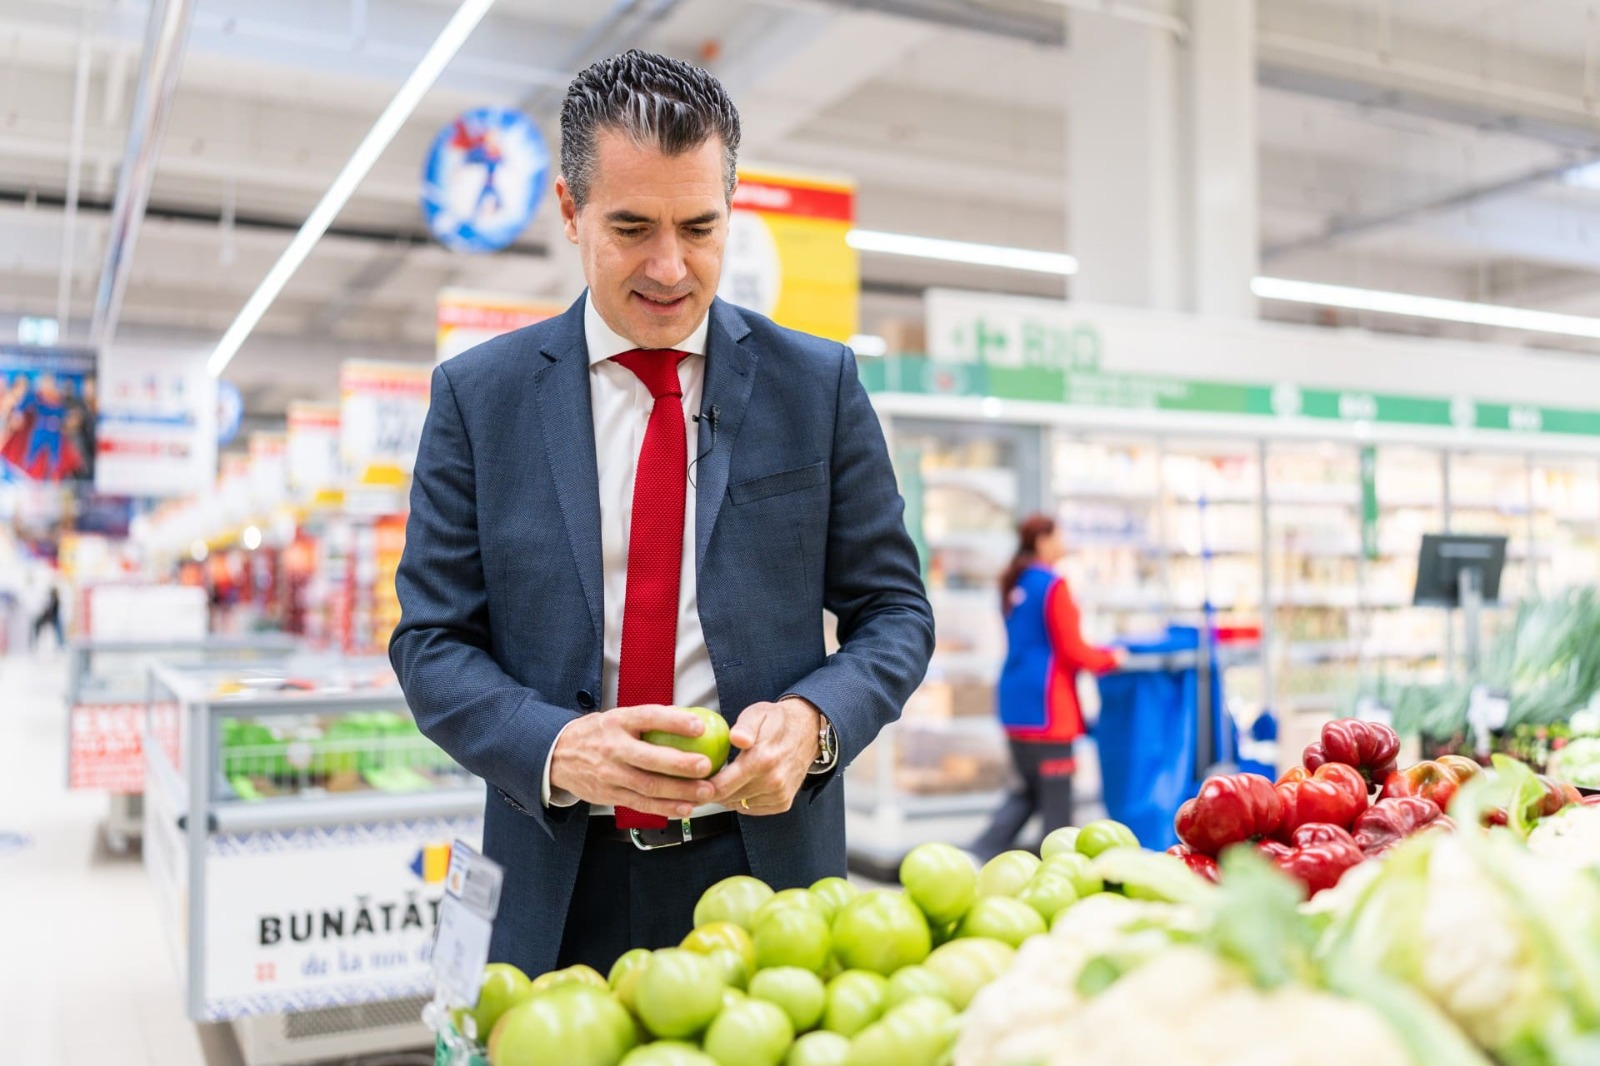 Carrefour ajunge la zece cooperative locale care livrează exclusiv legume şi fructe în magazinele reţelei, după ce a semnat parteneriate cu încă şase unităţi agricole. Julien Munch, CEO: Ne propunem să replicăm acest model şi în alte regiuni ale ţării